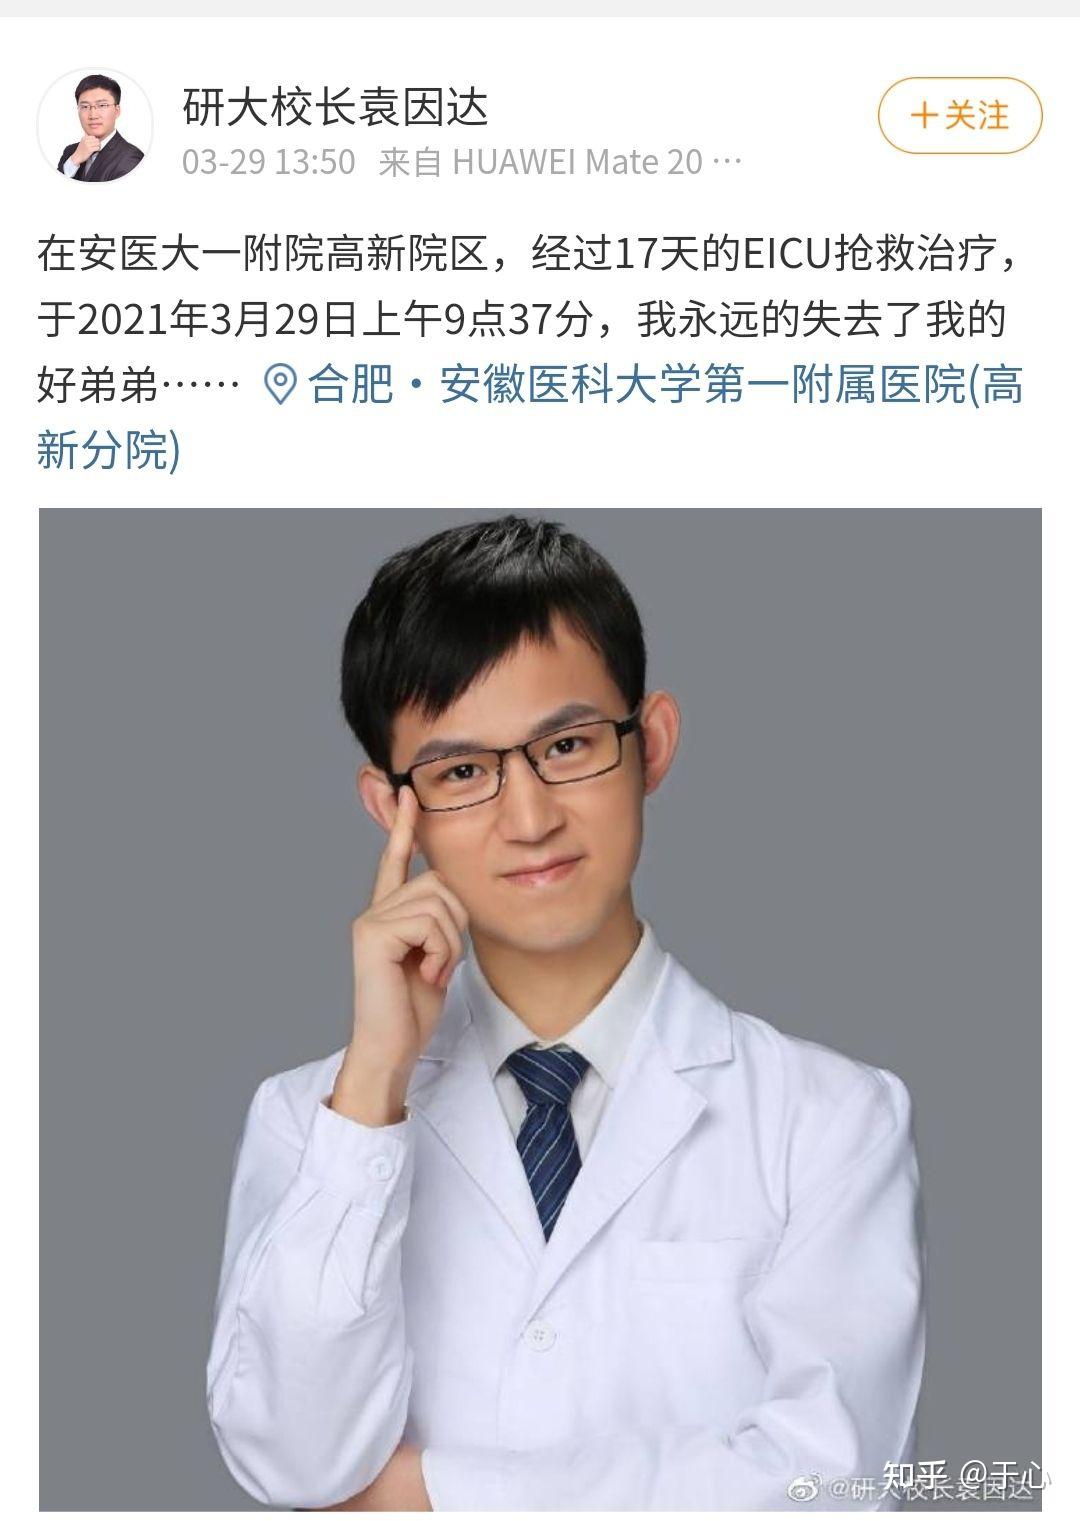 医学考研名师刘不言老师 29 日上午 9 时去世,你对刘老师有哪些印象?